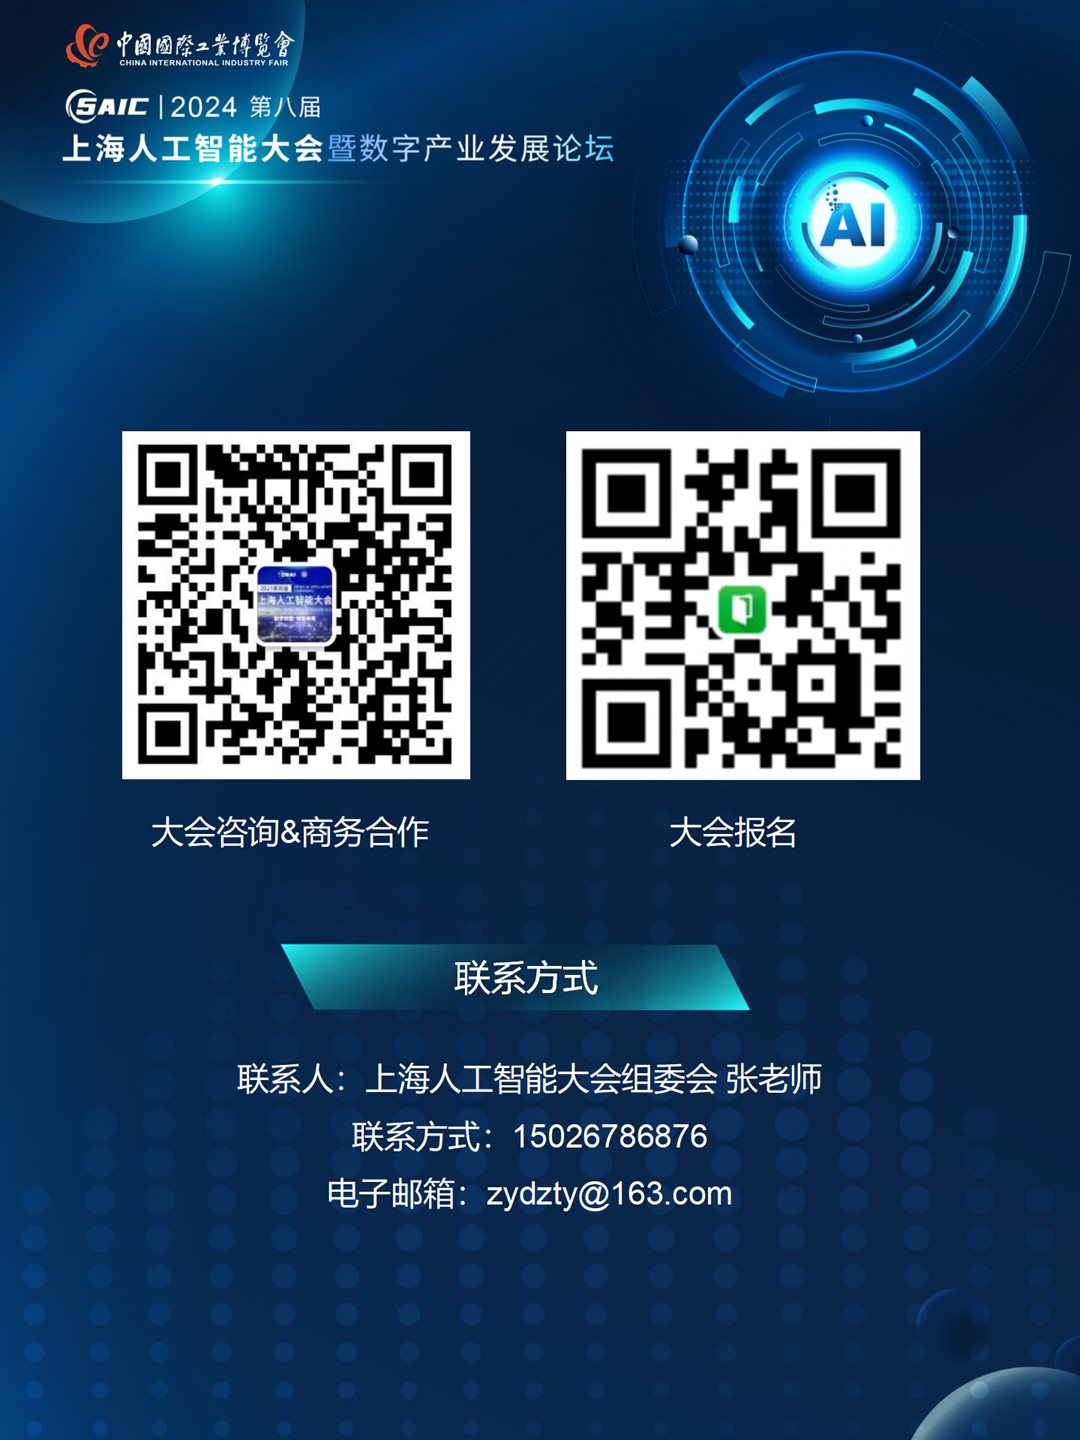 8th上海AI大会 大会合作方案 0517（对外）_21.png